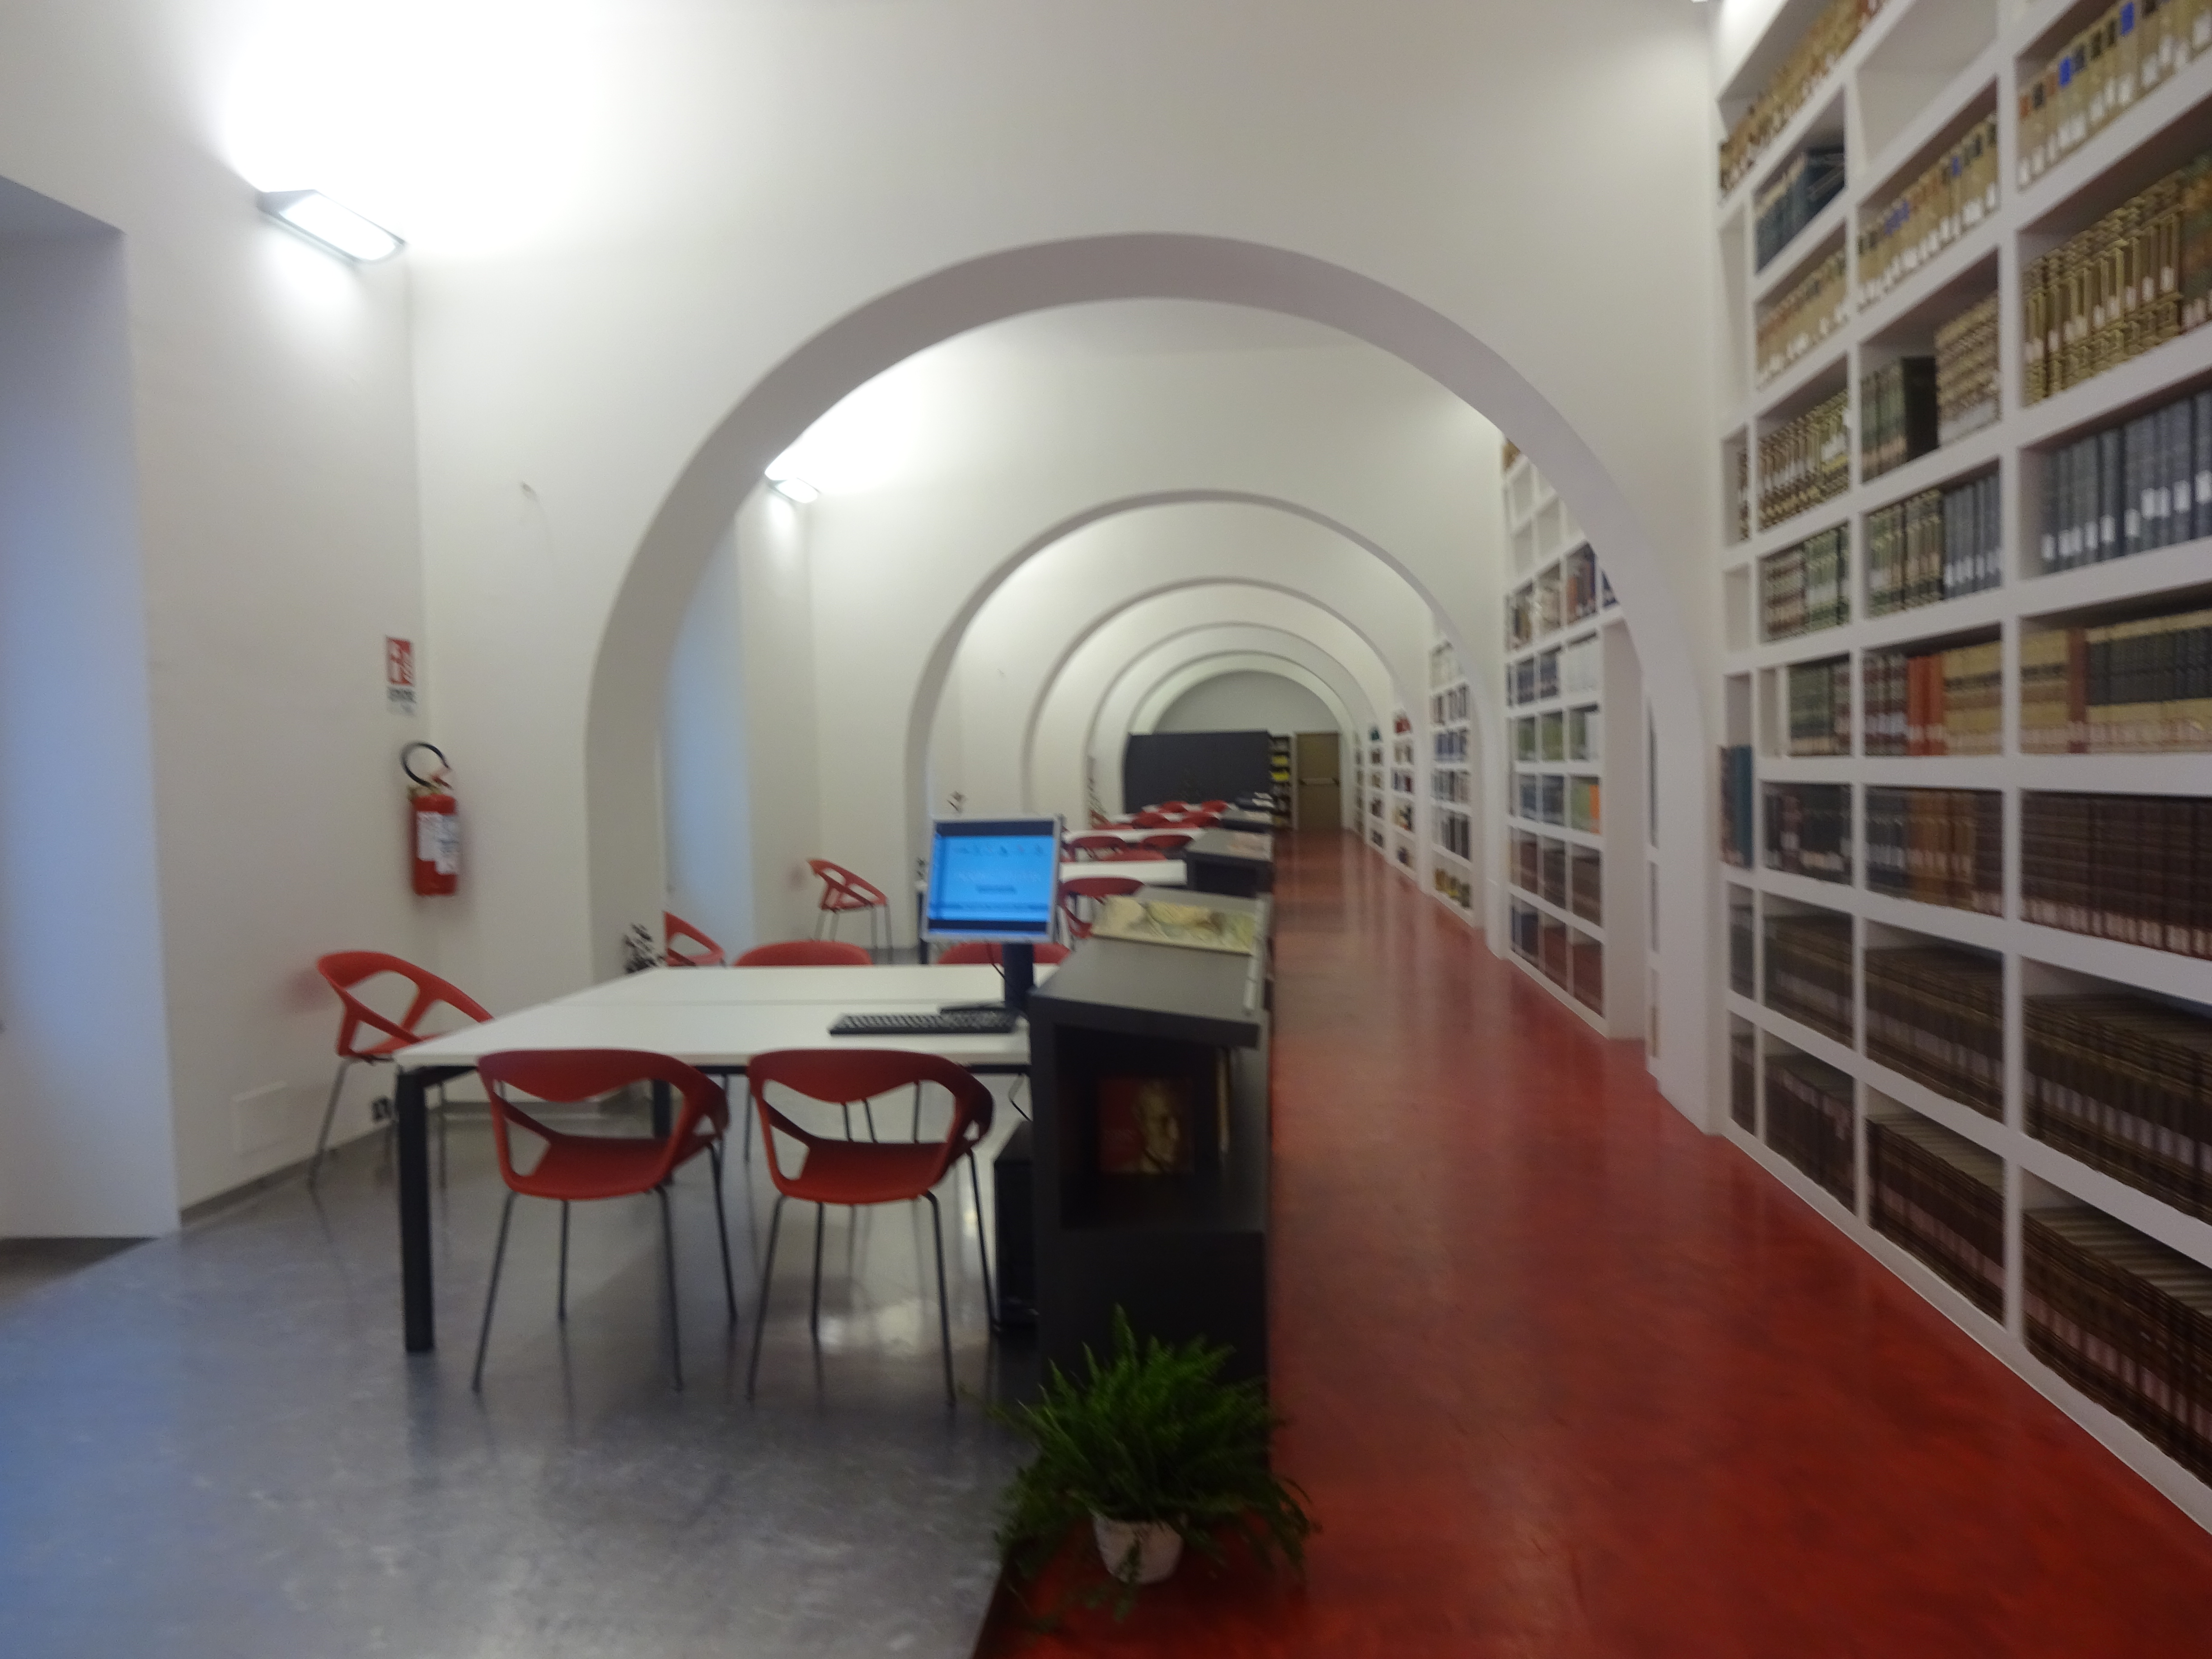 Biblioteca Comunale "S. Mignano", riapertura al pubblico